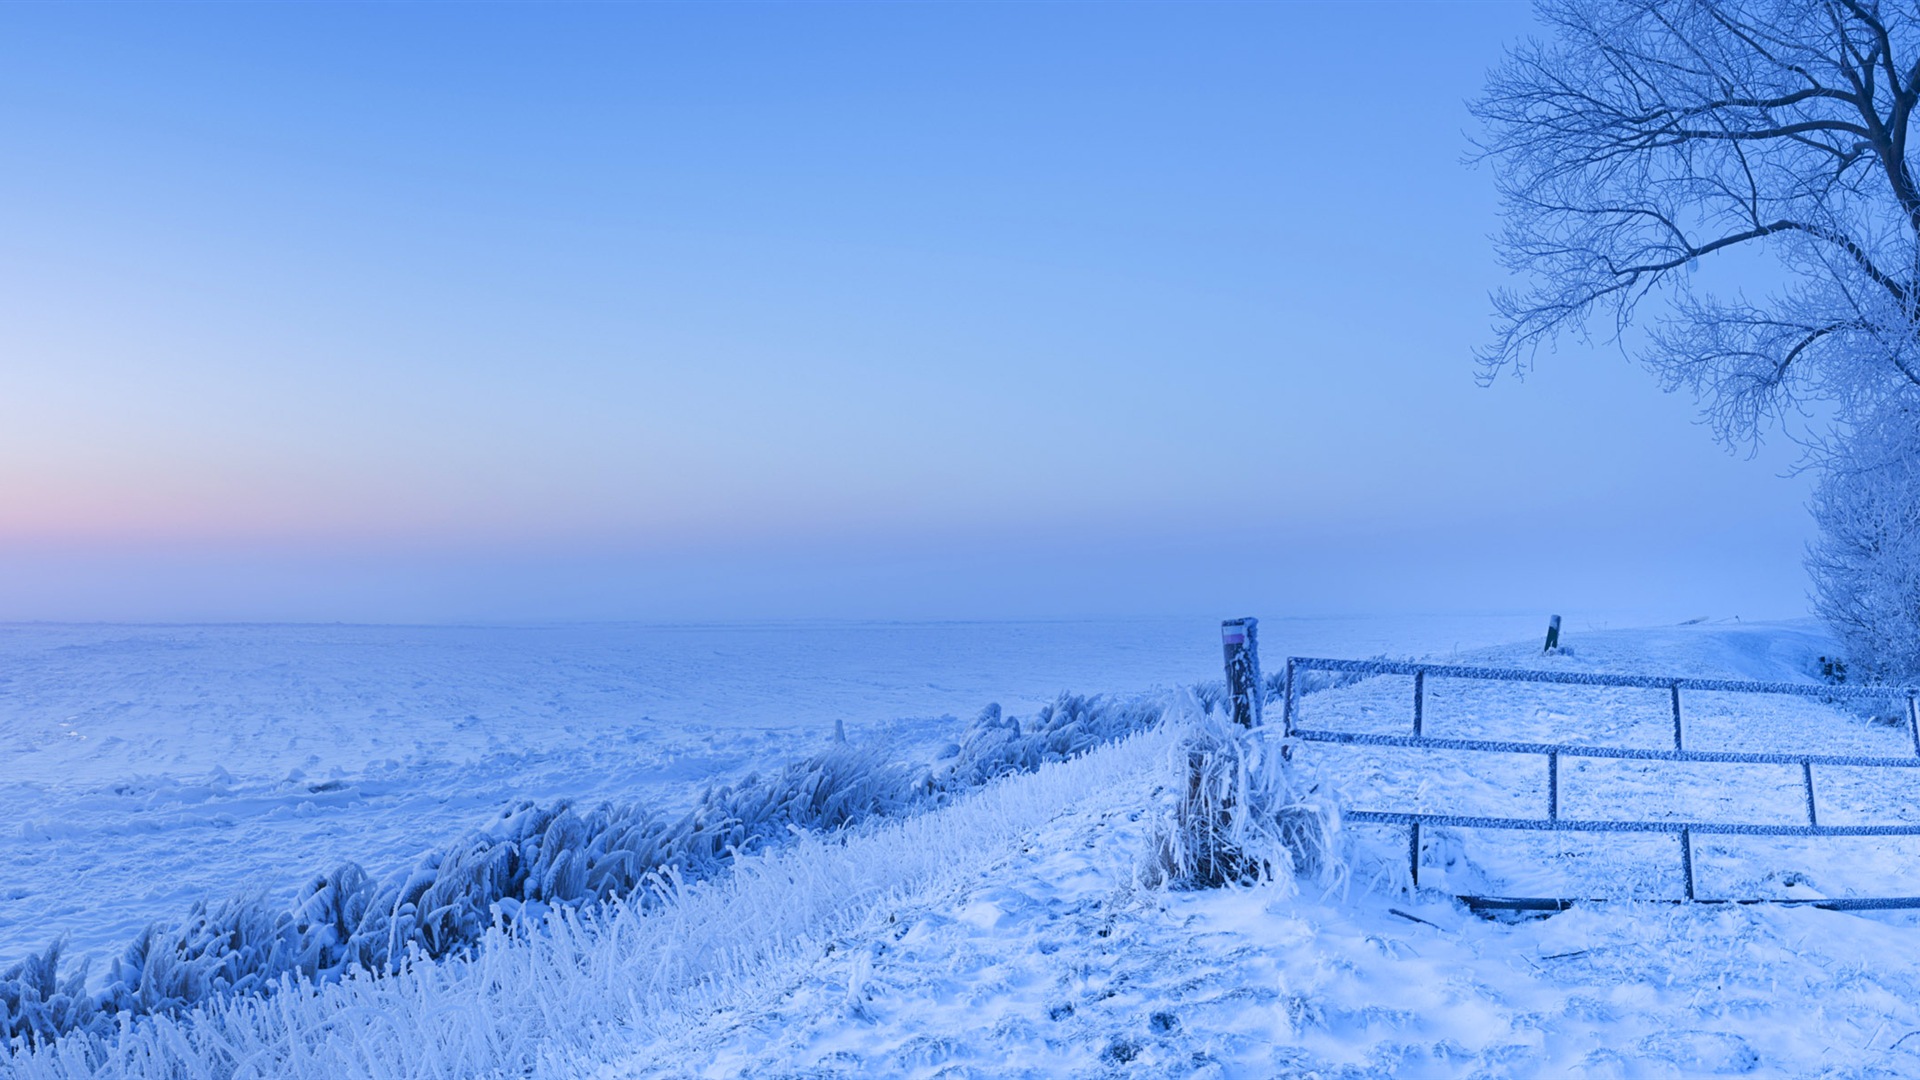 Belle neige froide d'hiver, de Windows 8 fonds d'écran widescreen panoramique #2 - 1920x1080